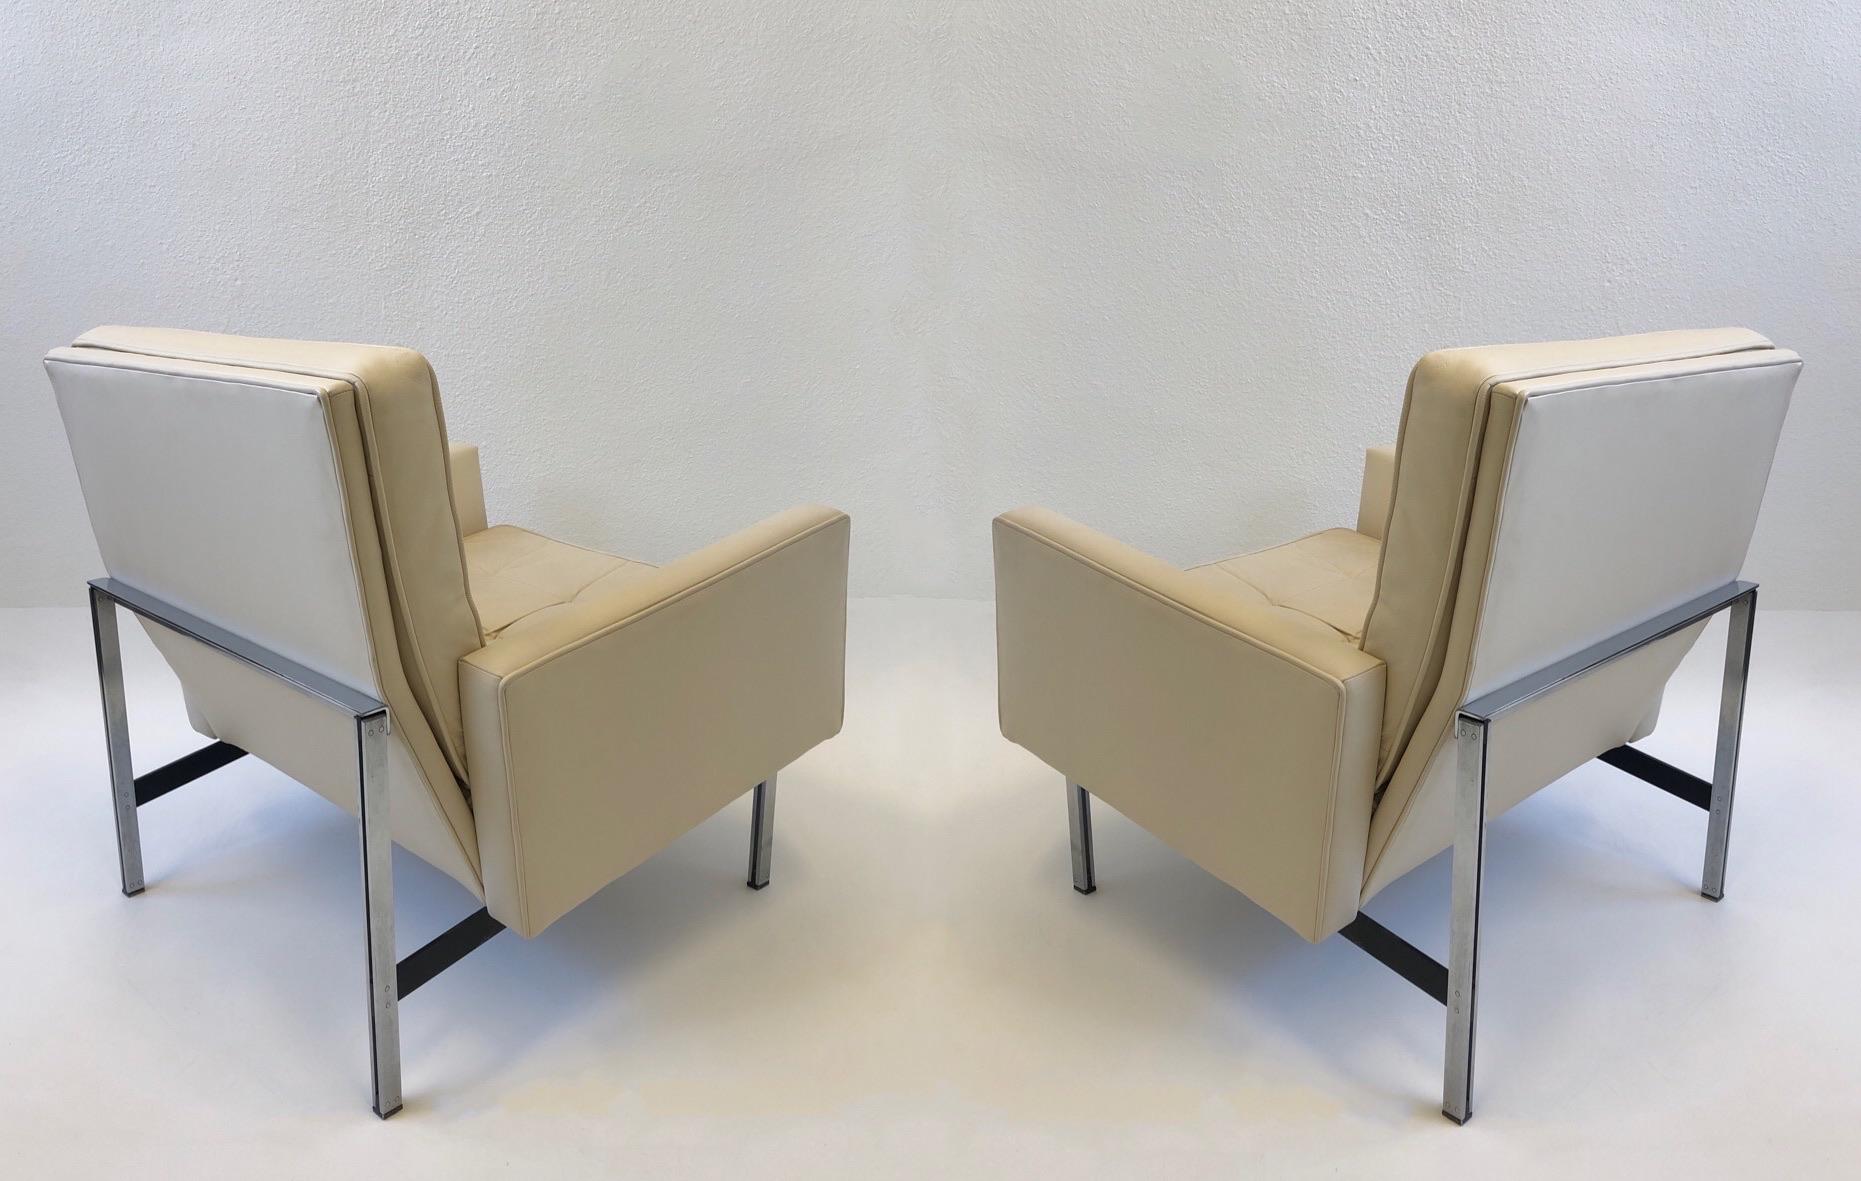 Schöne 1950er Jahre off weißem Leder mit parallelen bar Edelstahl Beine Lounge-Sessel von Florence Knoll für Knoll entworfen.
Dies geht aus der Botschaft von Australien hervor.
Das Sofa ist ebenfalls verfügbar.
Abmessungen: 30